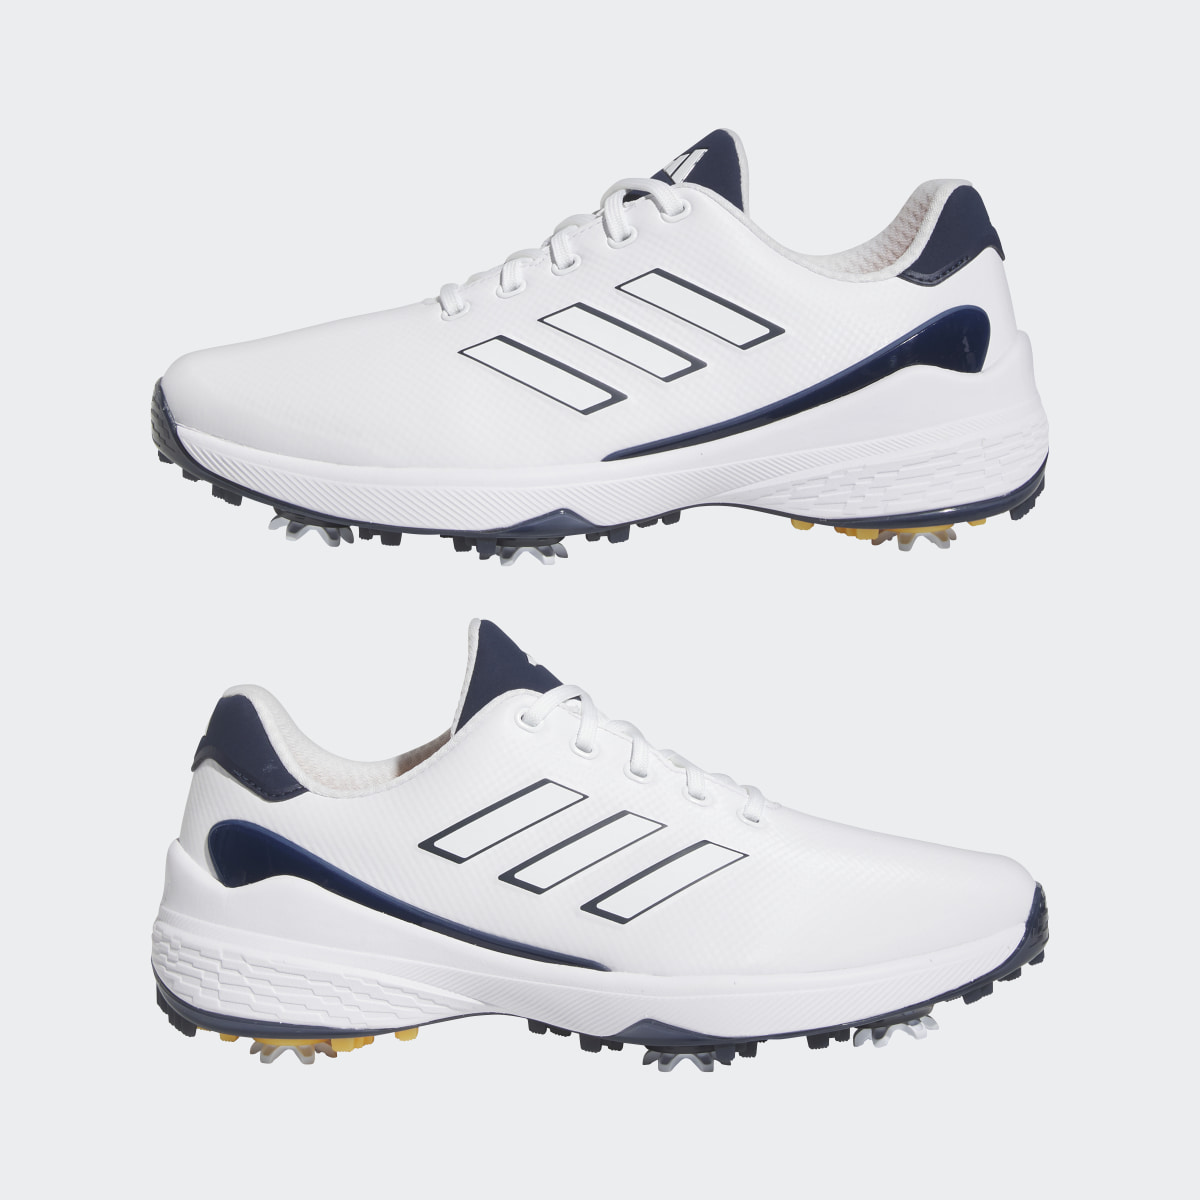 Adidas ZG23 Golf Shoes. 11